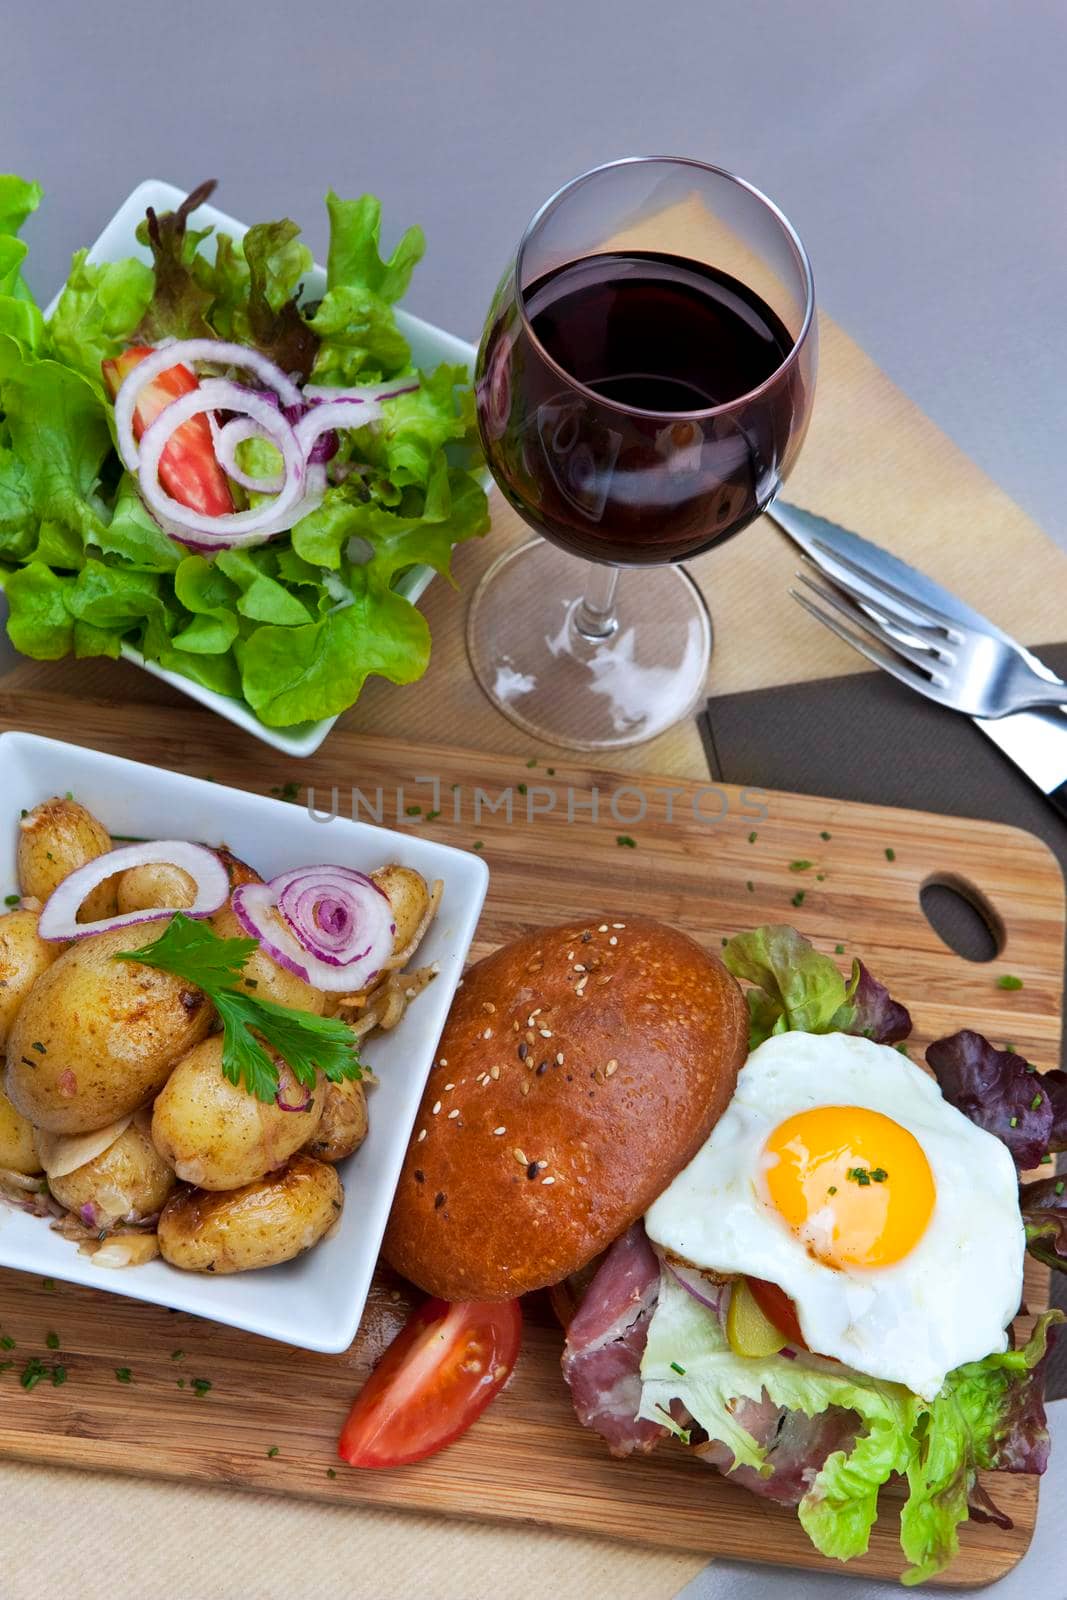 Hamburger, potatoes, egg and green salad on a wooden board